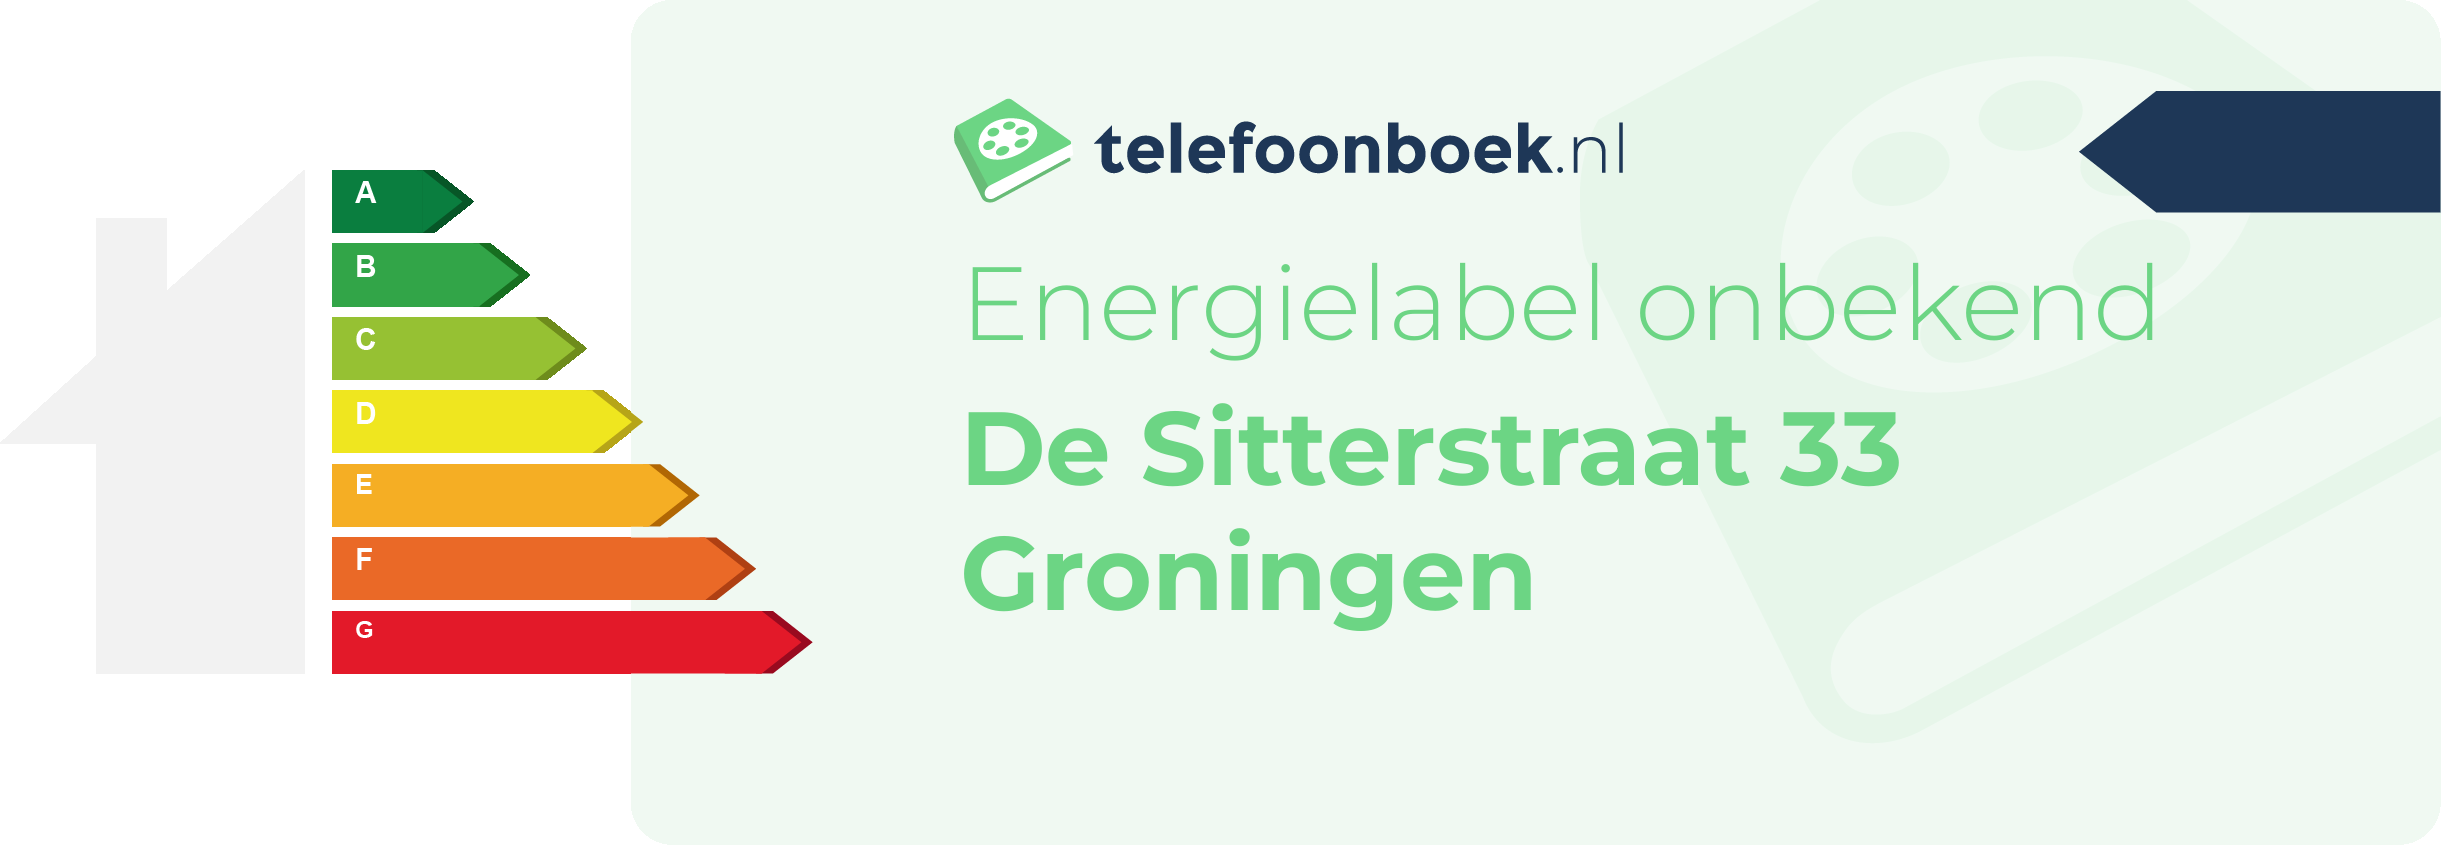 Energielabel De Sitterstraat 33 Groningen